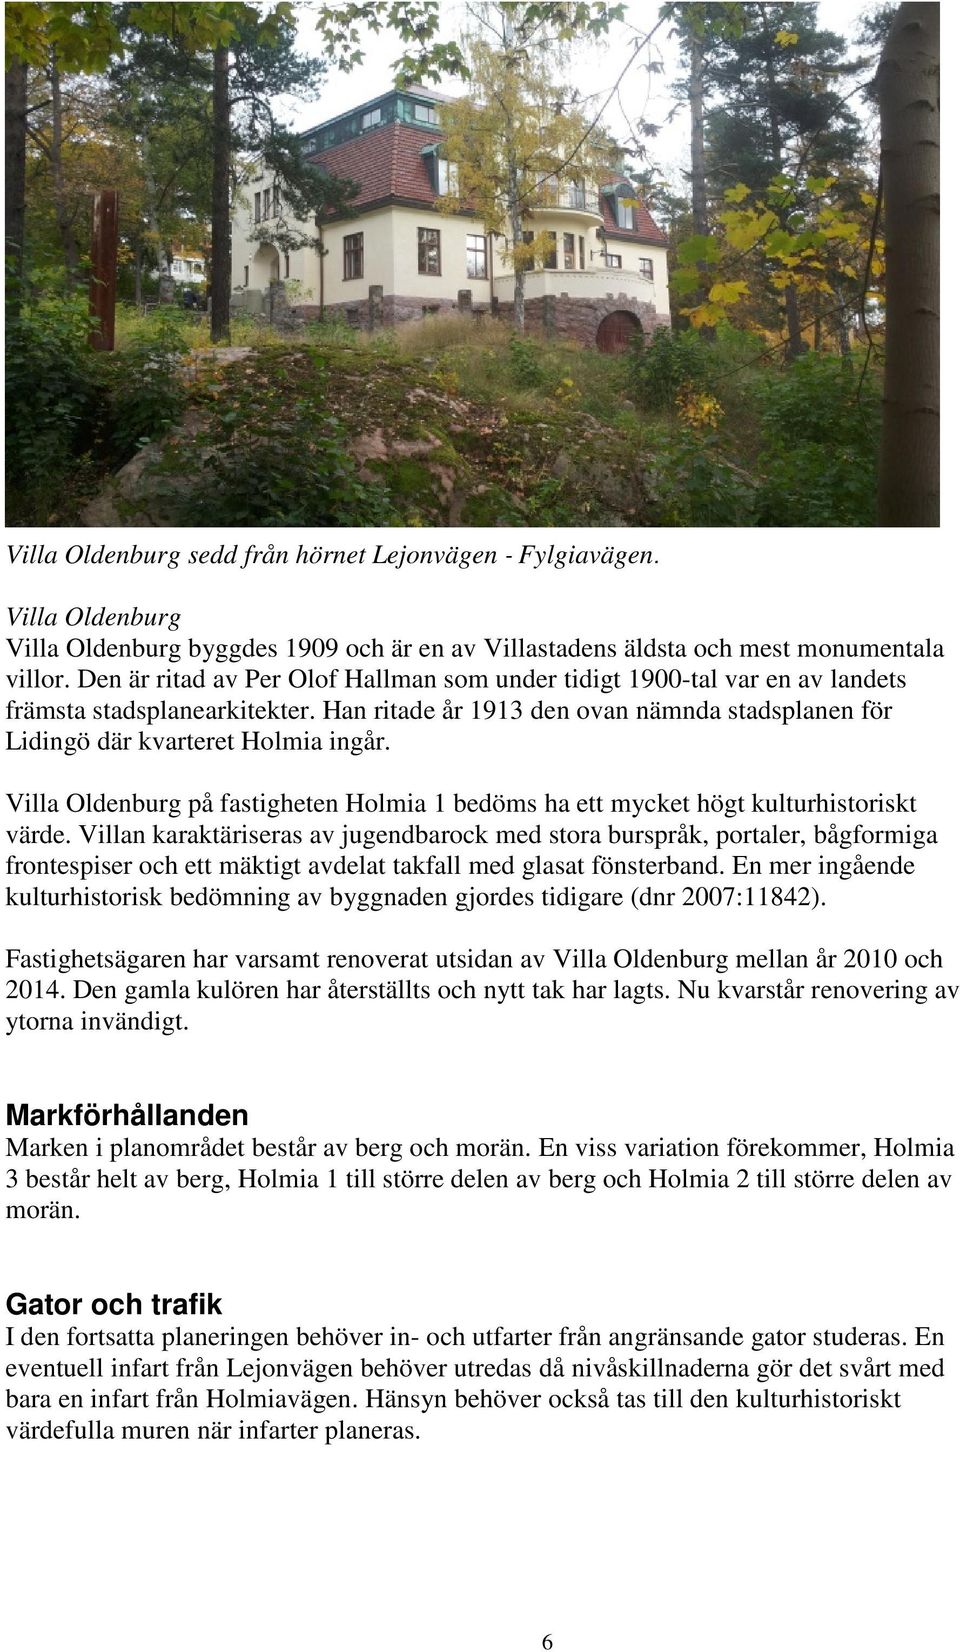 Villa Oldenburg på fastigheten Holmia 1 bedöms ha ett mycket högt kulturhistoriskt värde.